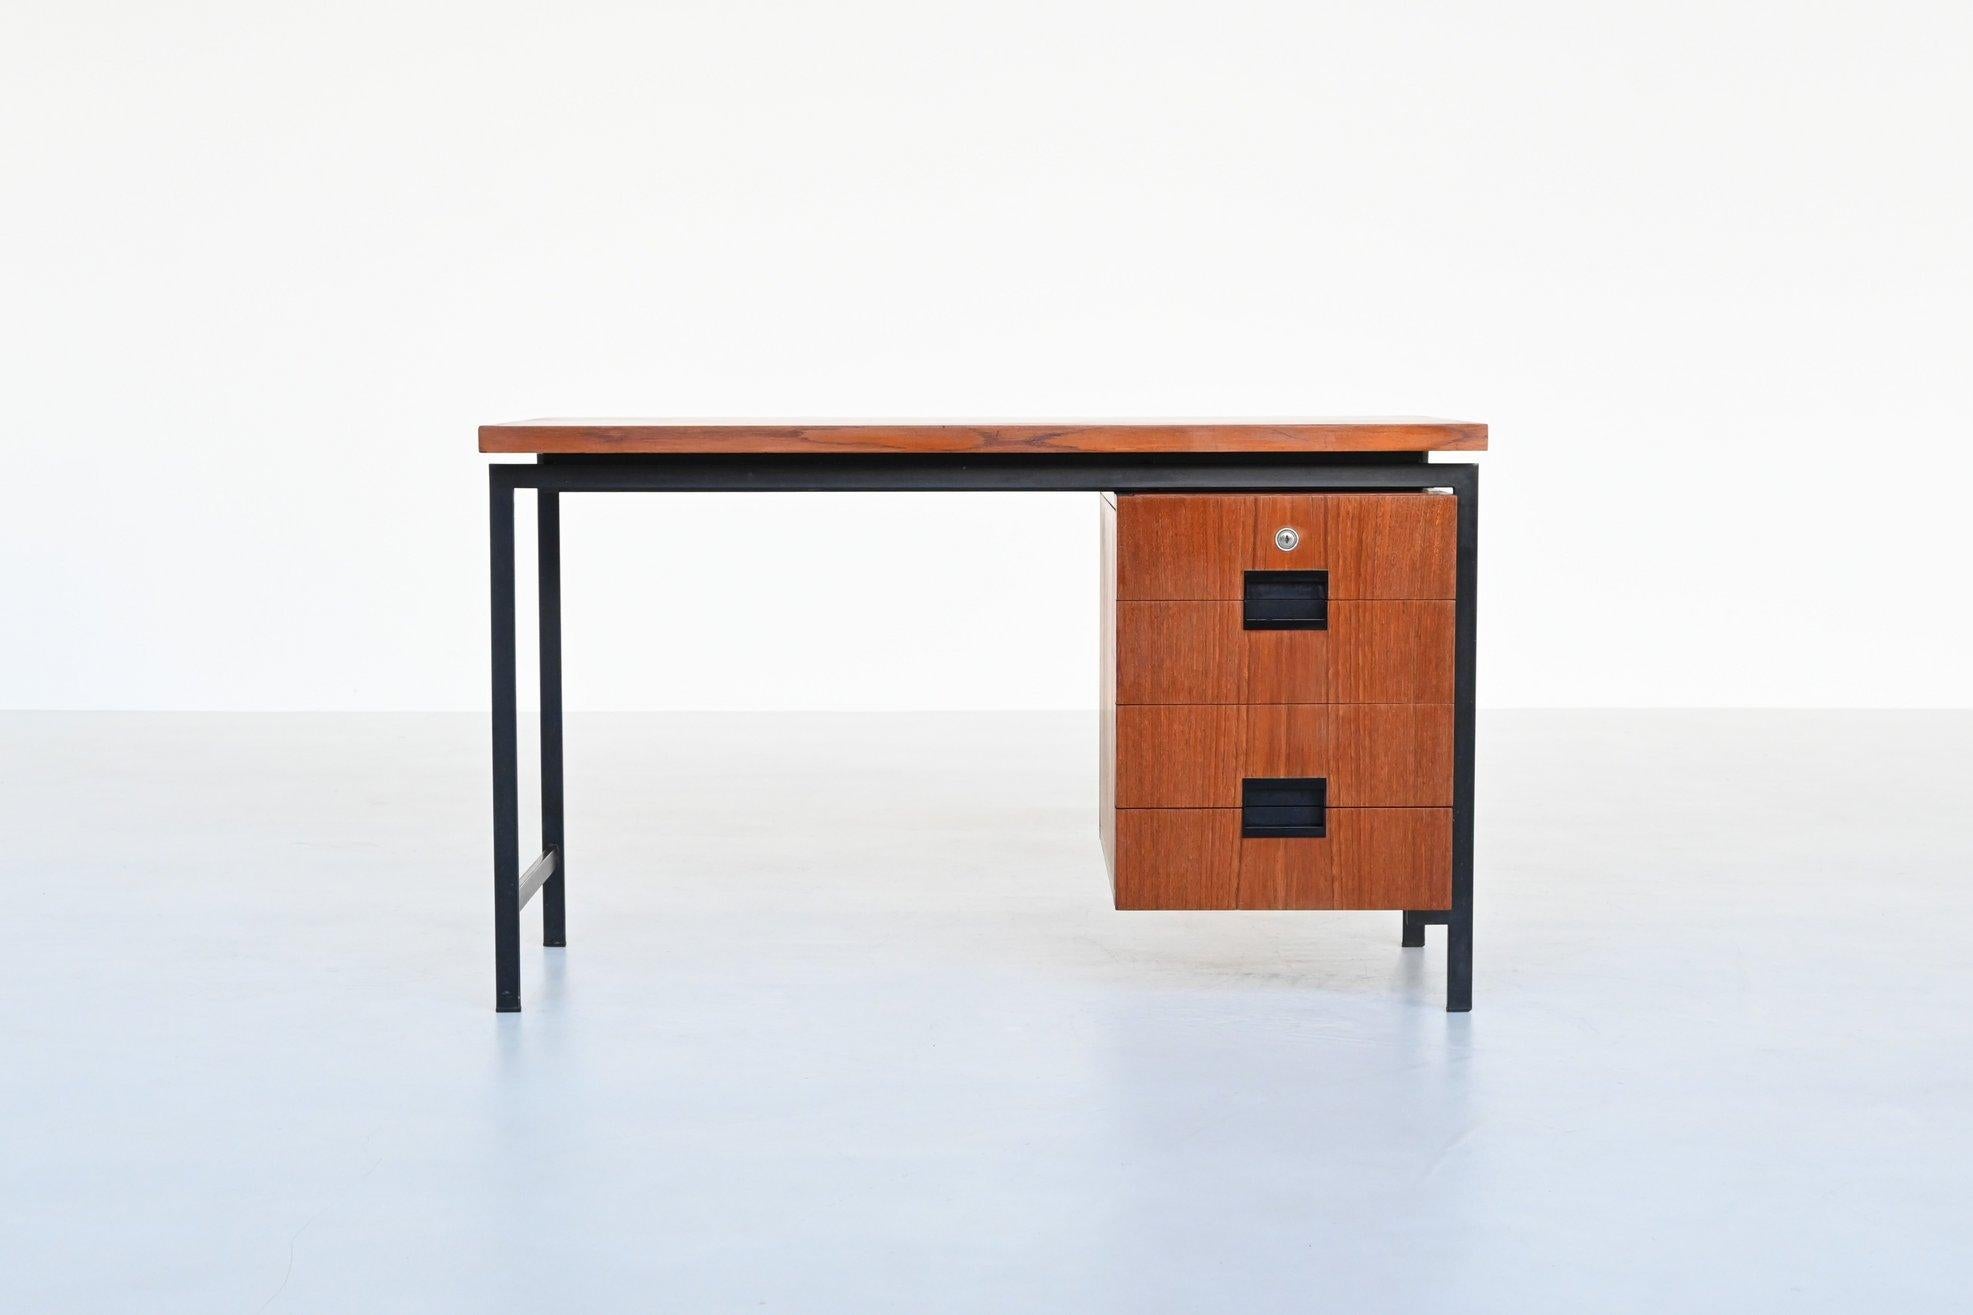 Formschöner Schreibtisch Modell EU01 aus der Japanischen Serie, entworfen von Cees Braakman für Pastoe, Niederlande 1958. Dieser minimalistische Schreibtisch ist aus Teakholz gefertigt und hat ein schwarz lackiertes Metallgestell. Die Griffe sind